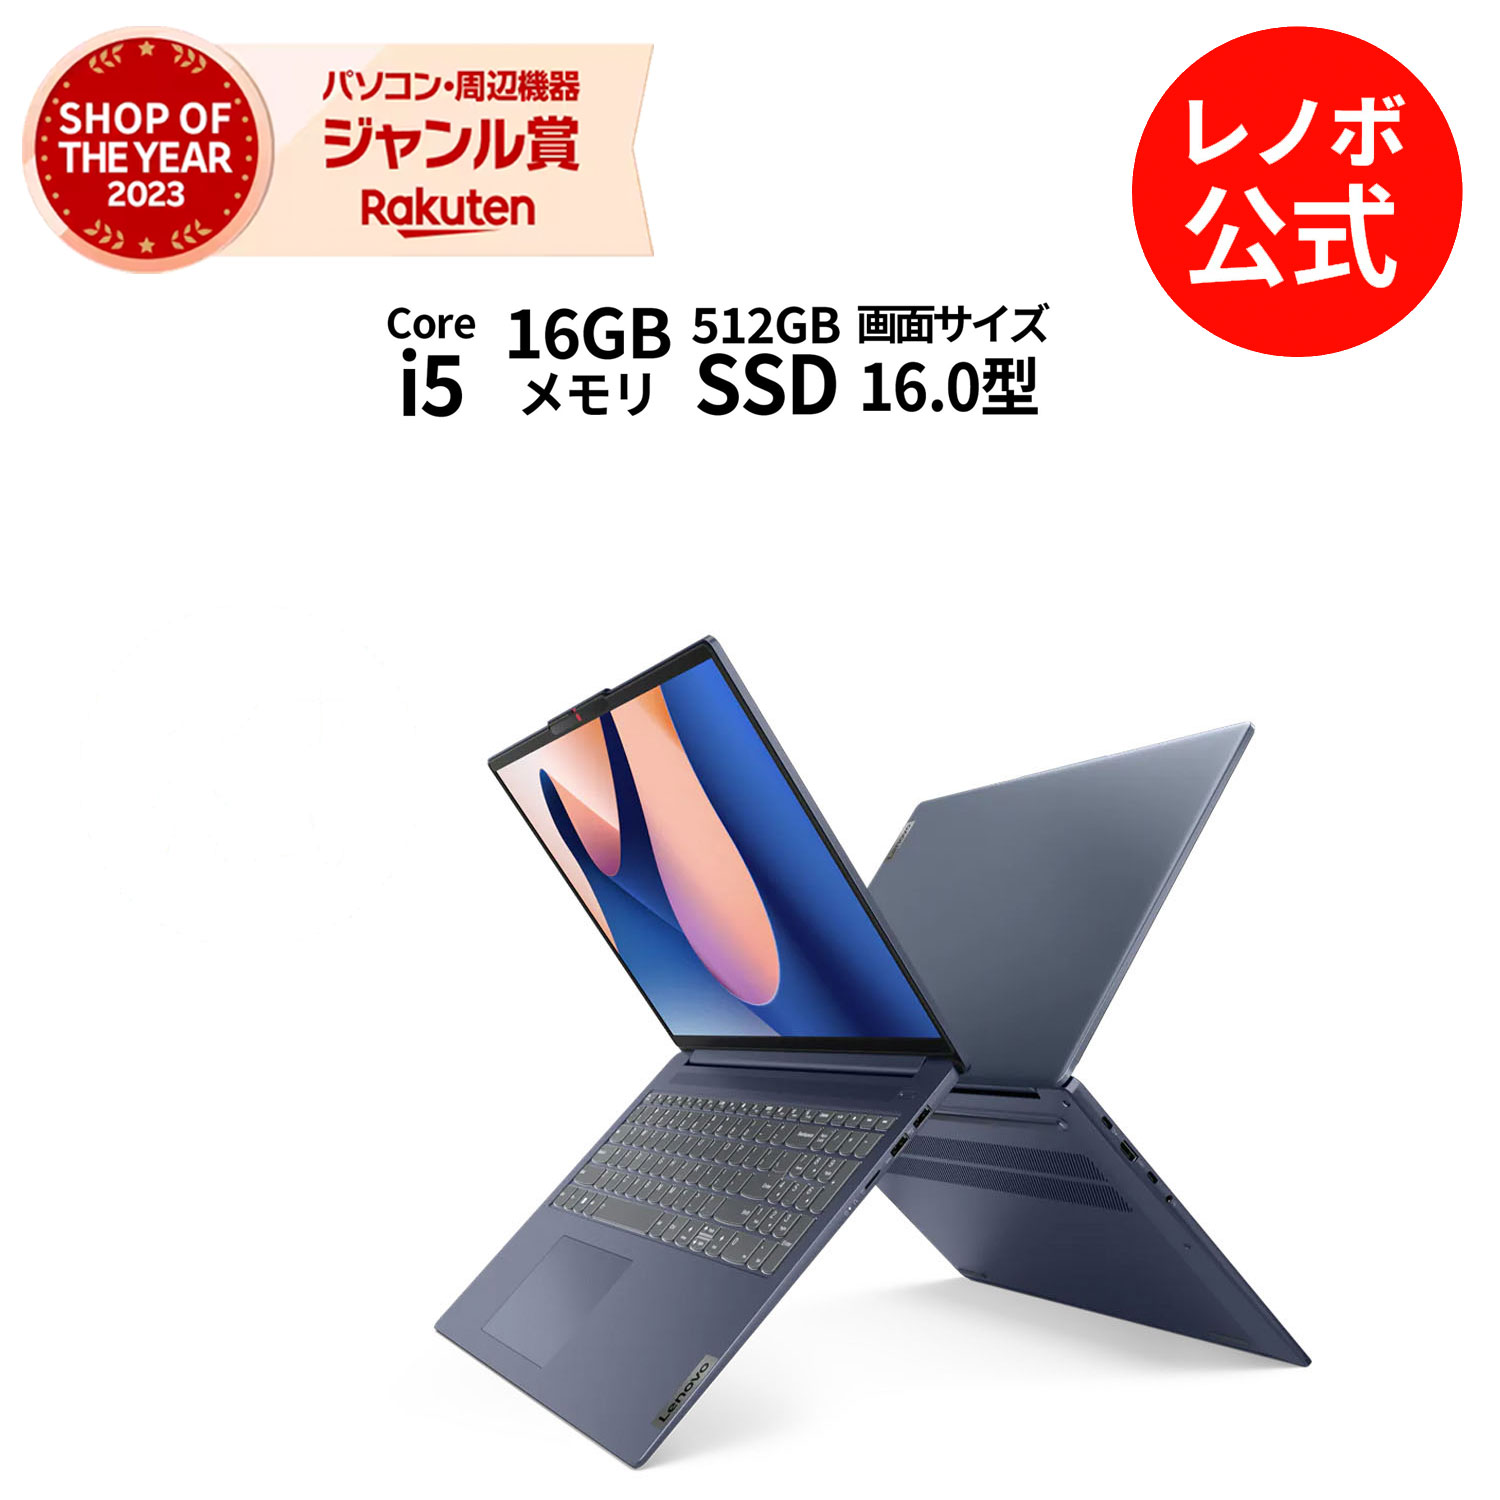 【5/28-6/3】P10倍 新生活 【短納期】直販 ノートパソコン：IdeaPad Slim 5i Gen 8 Core i5-13500H搭載 16.0型 WUXGA液晶 16GBメモリー 512GB SSD Officeなし Windows11 アビスブルー 送料無料…